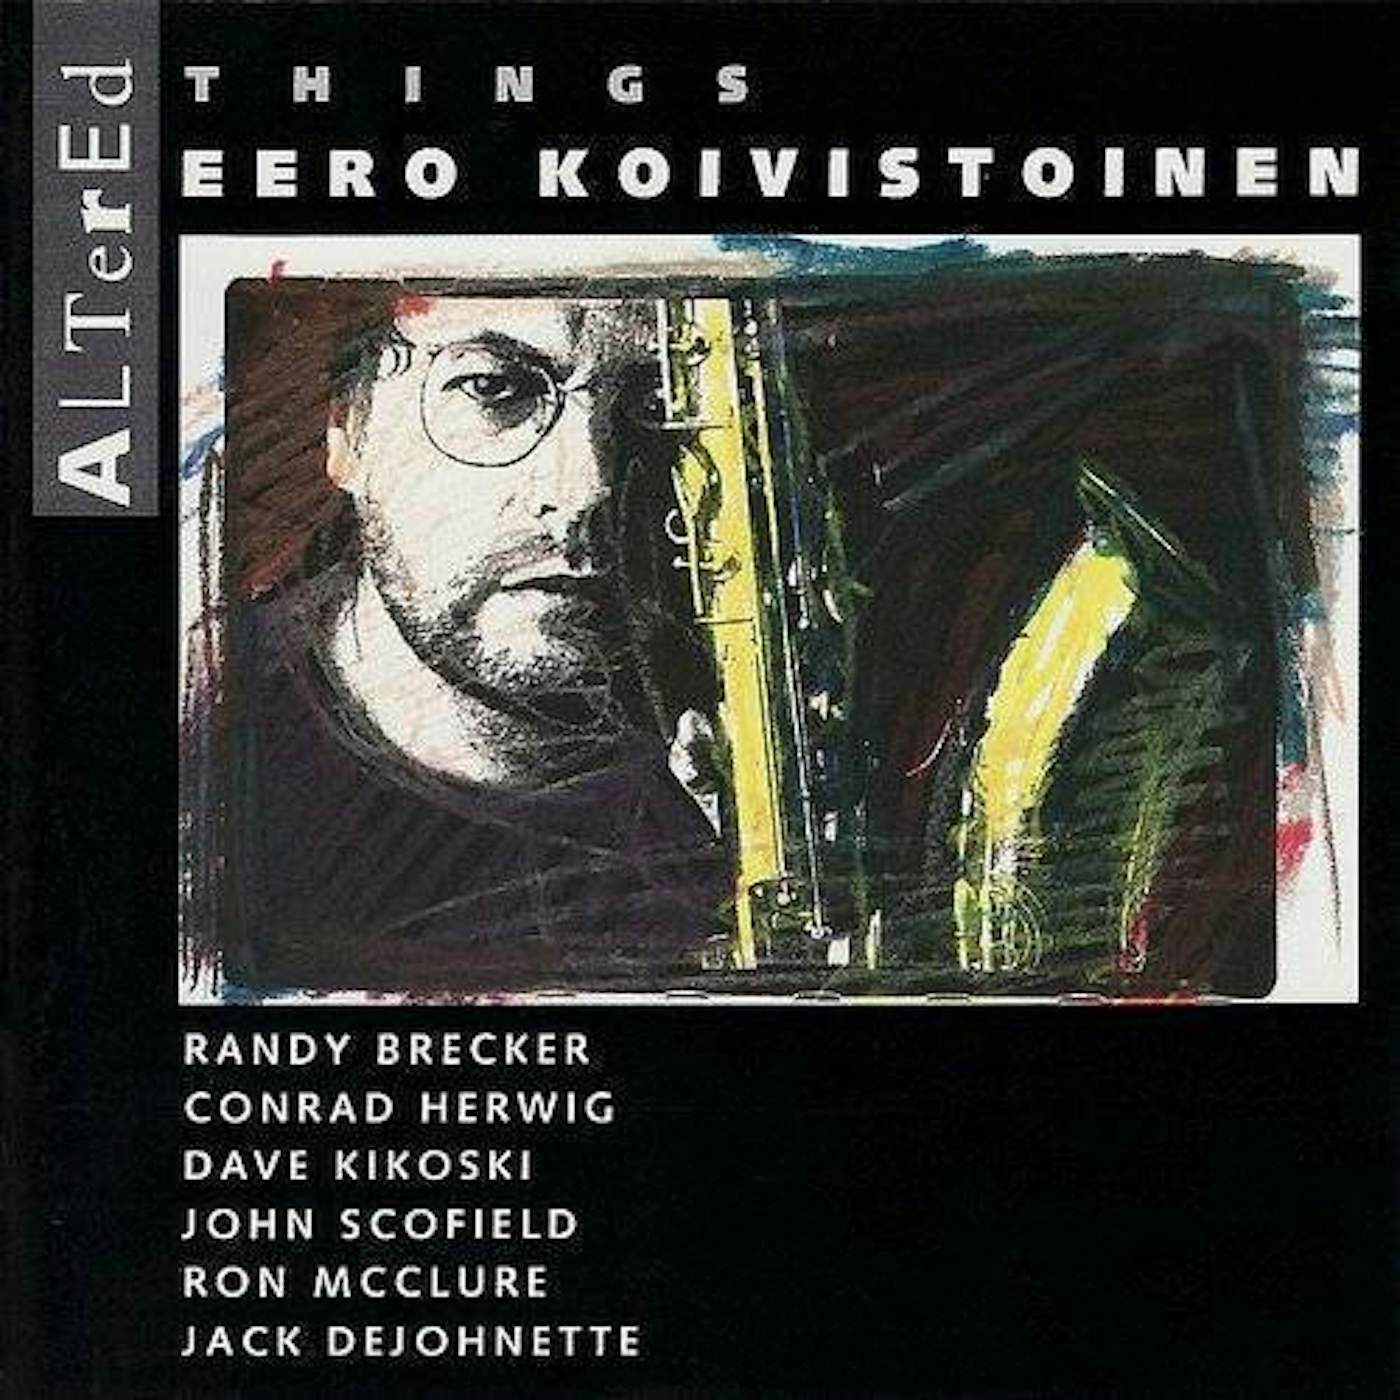 Eero Koivistoinen Altered Things Vinyl Record